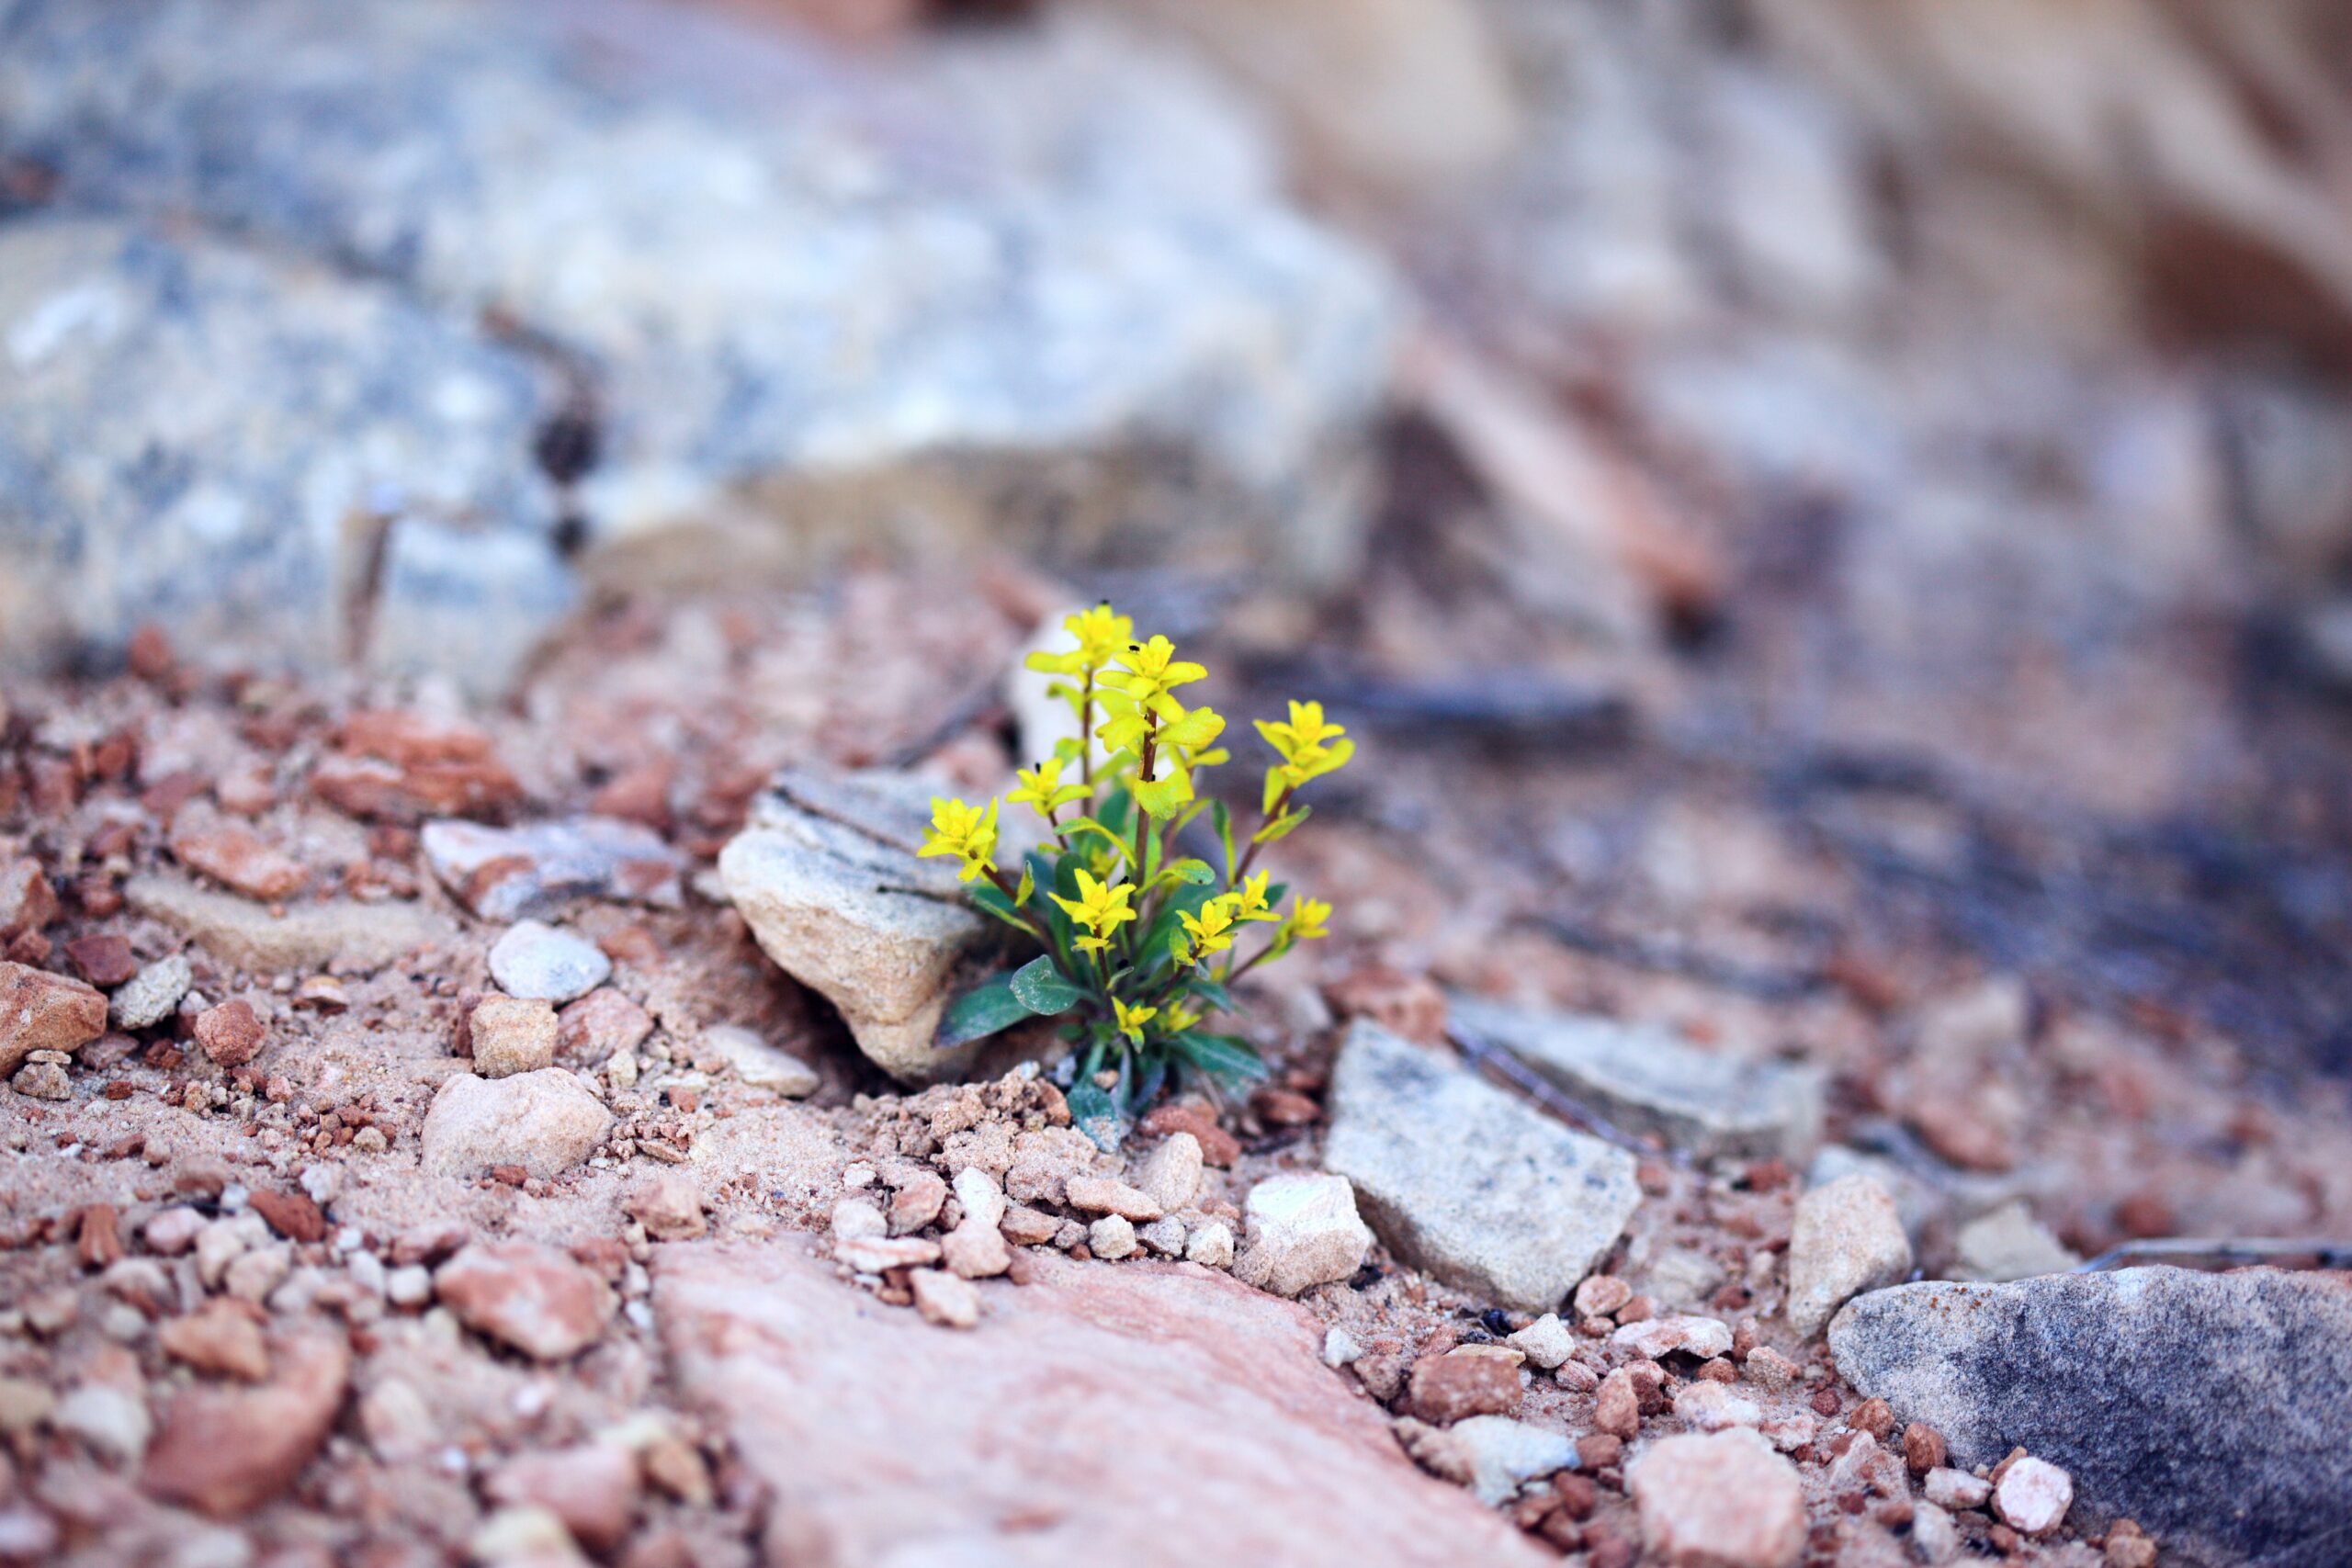 flower growing in rocks